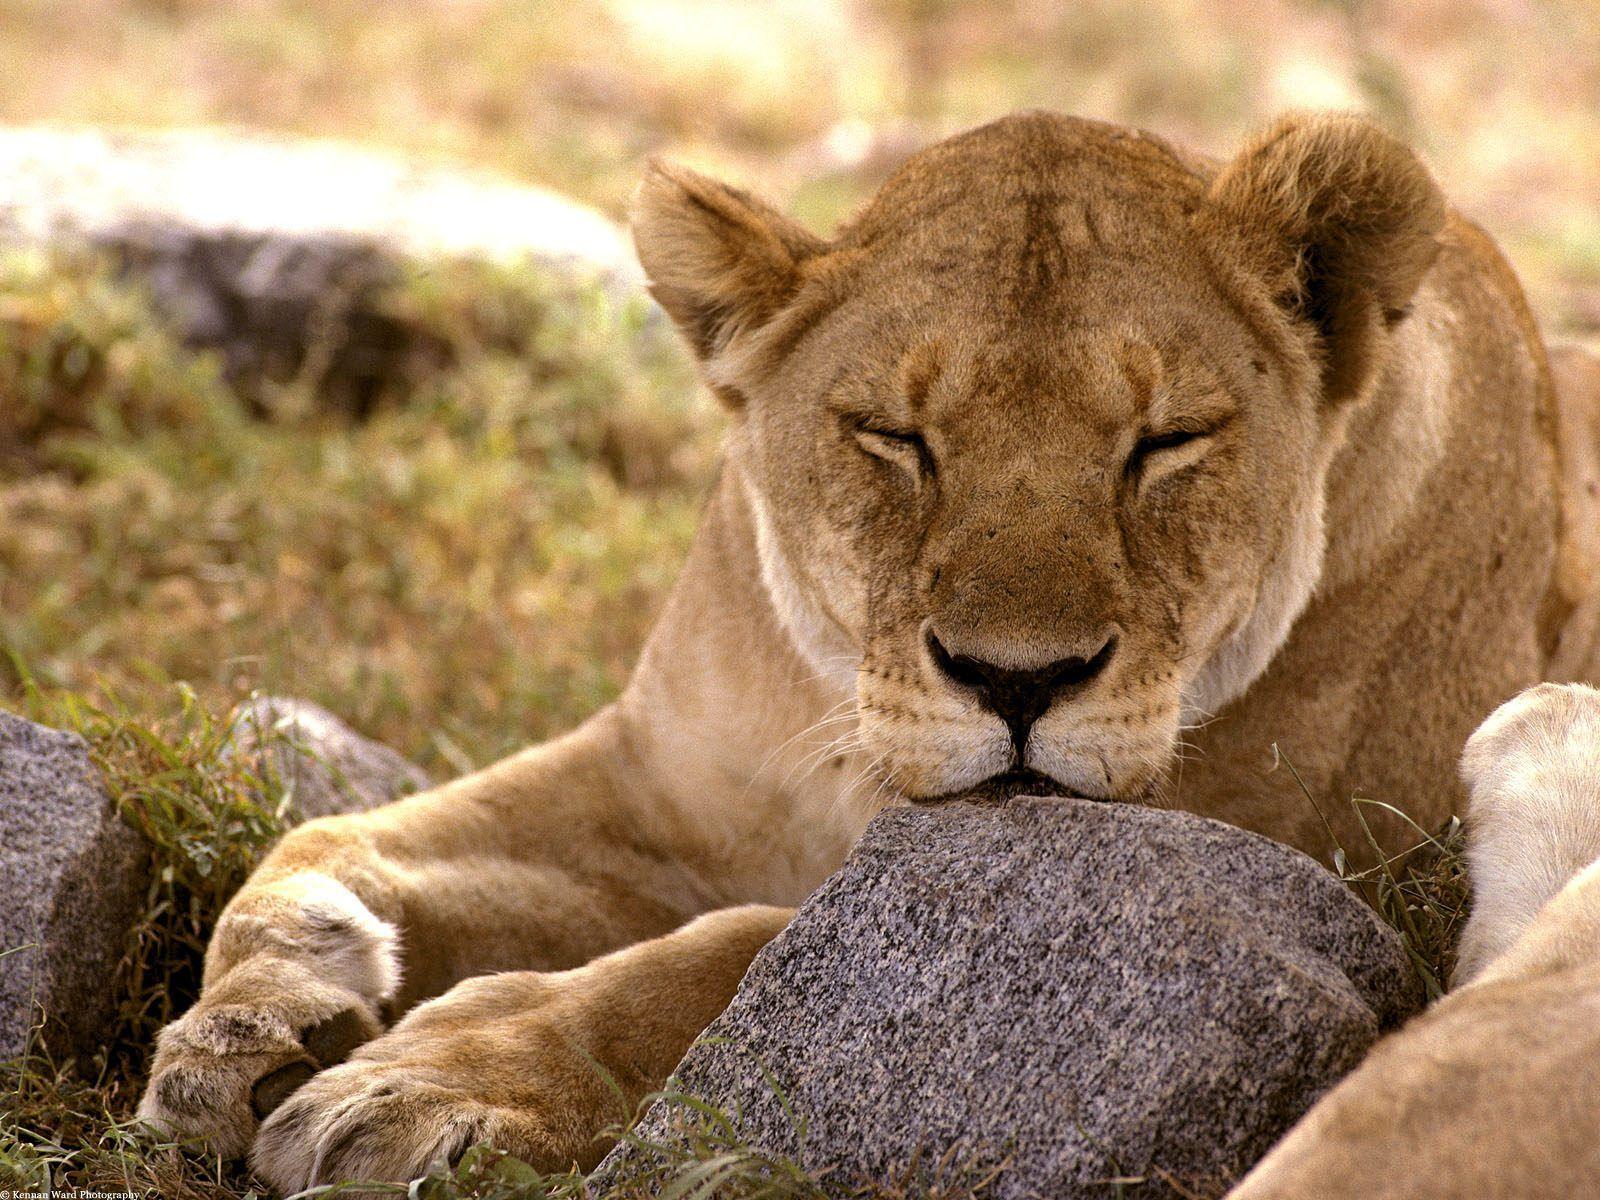 Nature at Its Best: 50 Photo of Serengeti National Park Tanzania